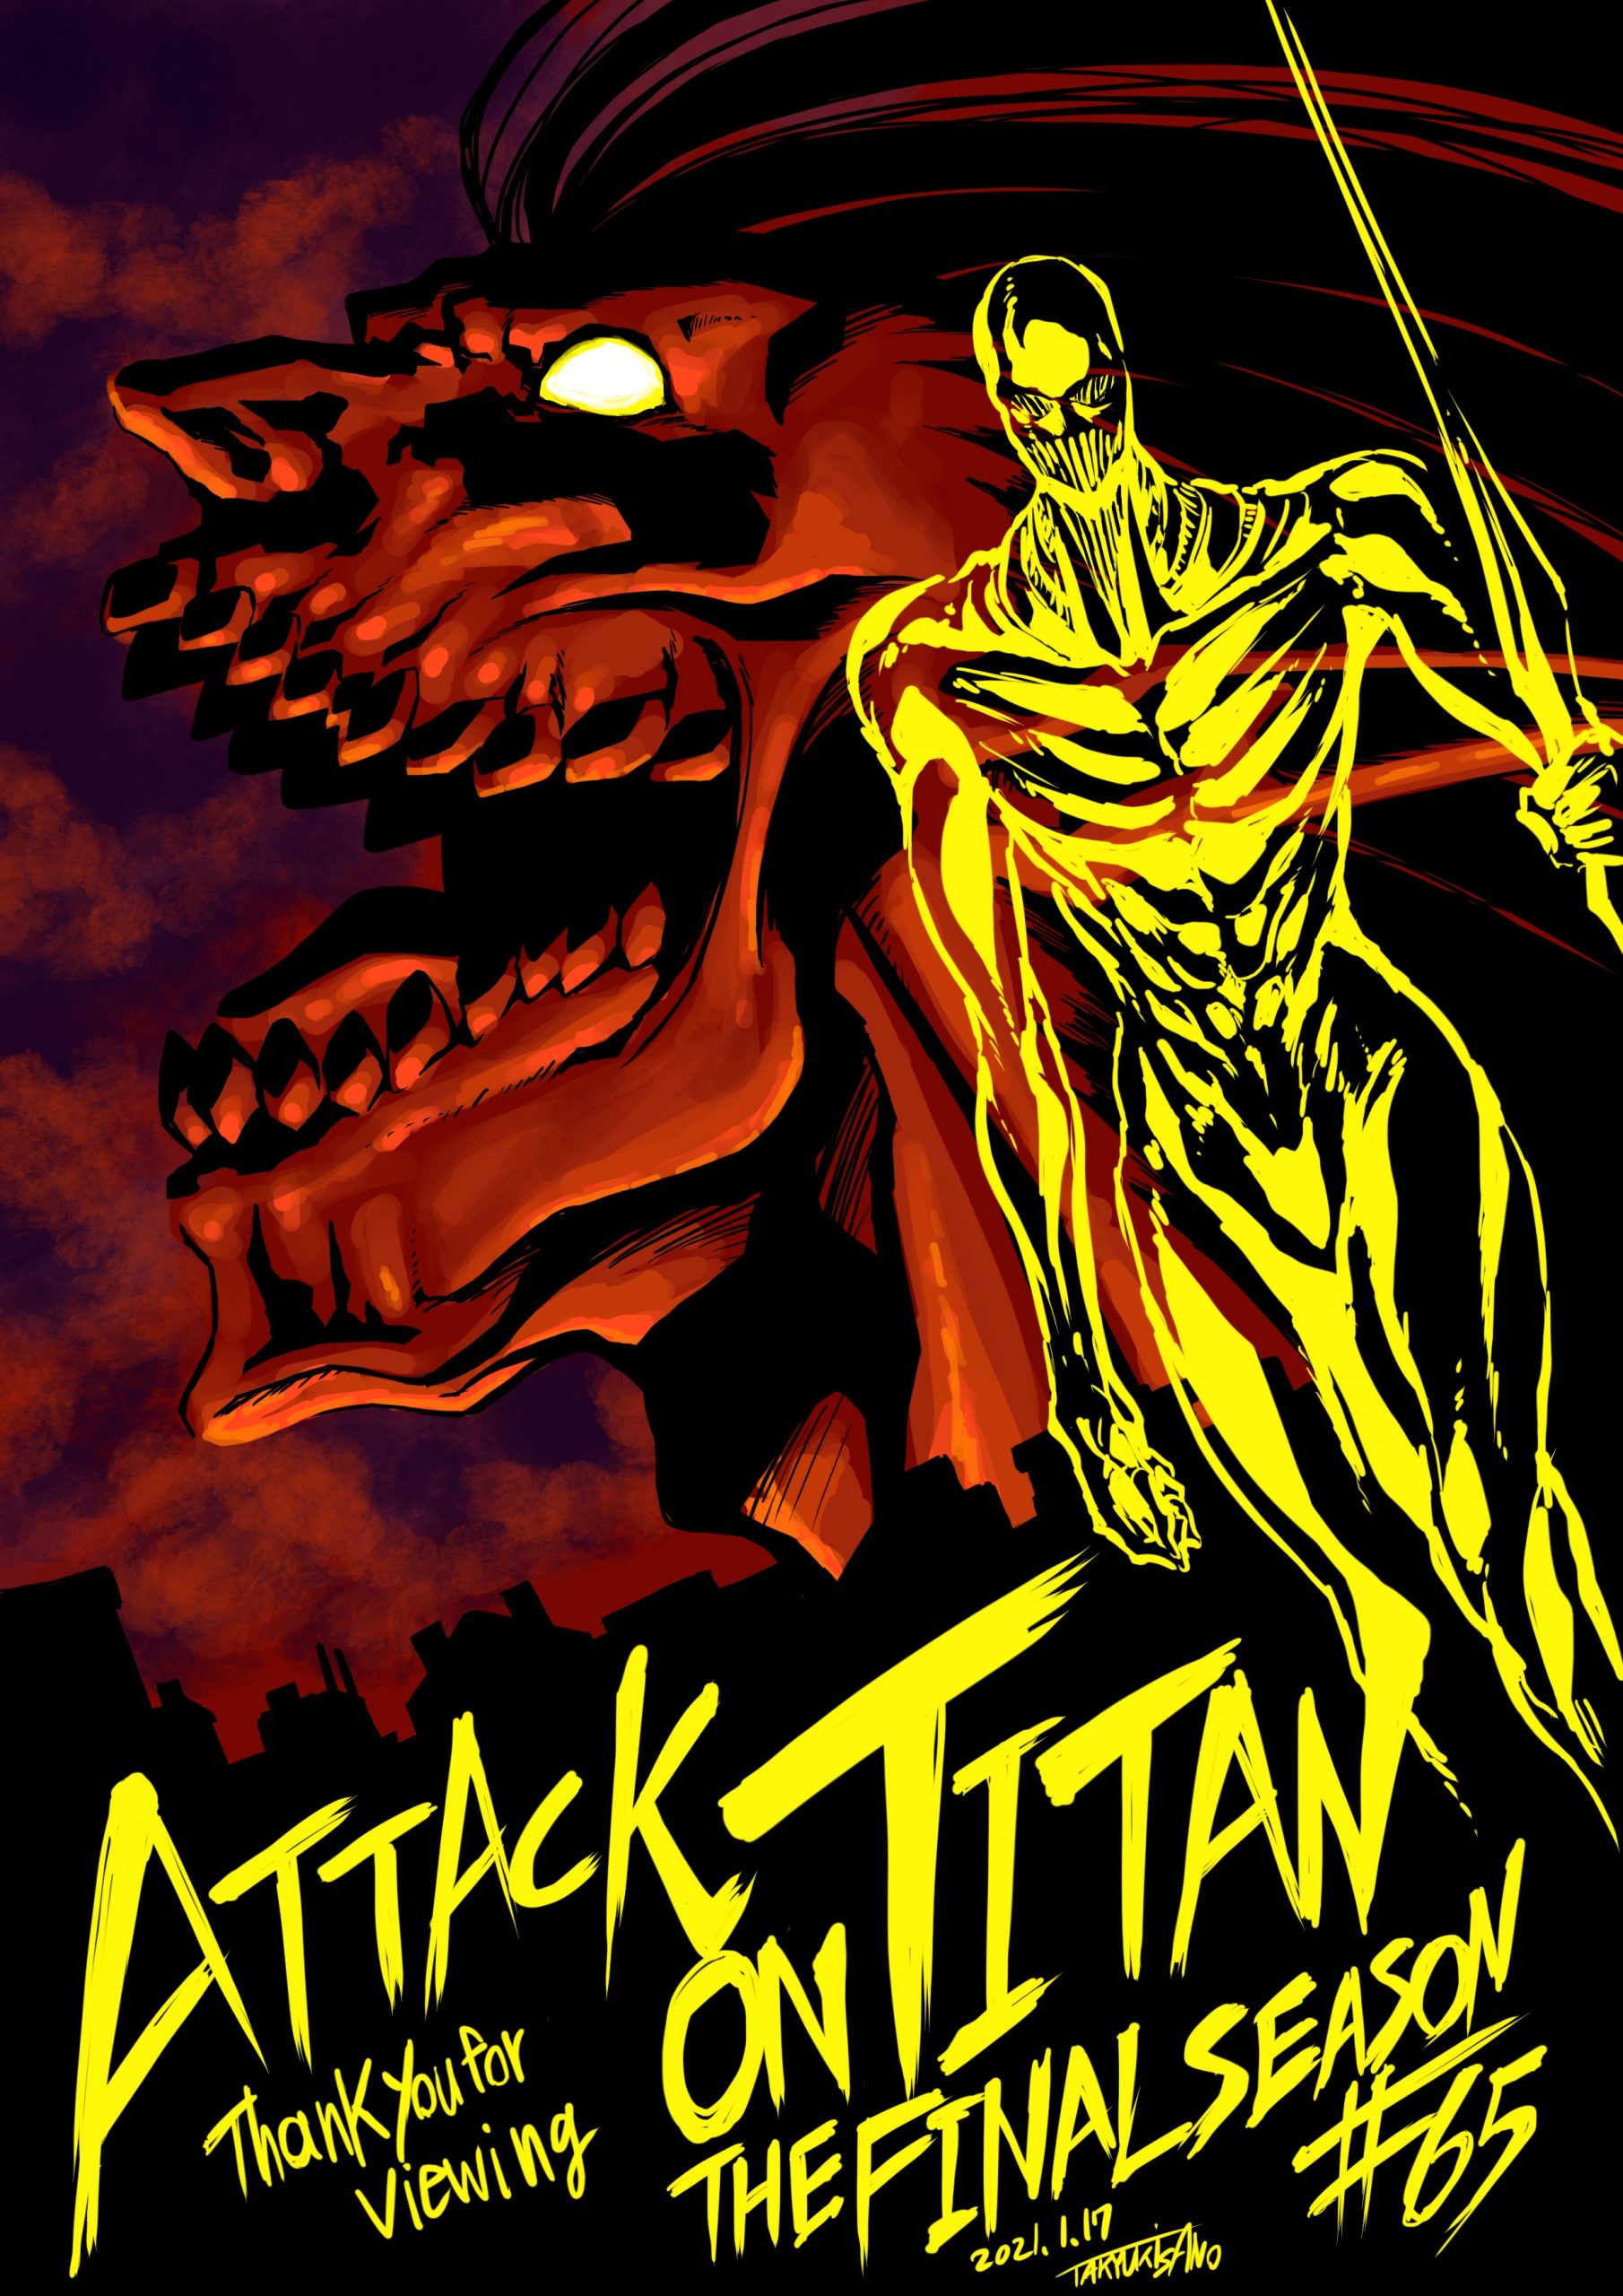 Diretor de Attack on Titan compartilhou uma ilustração especial celebrando o novo episódio